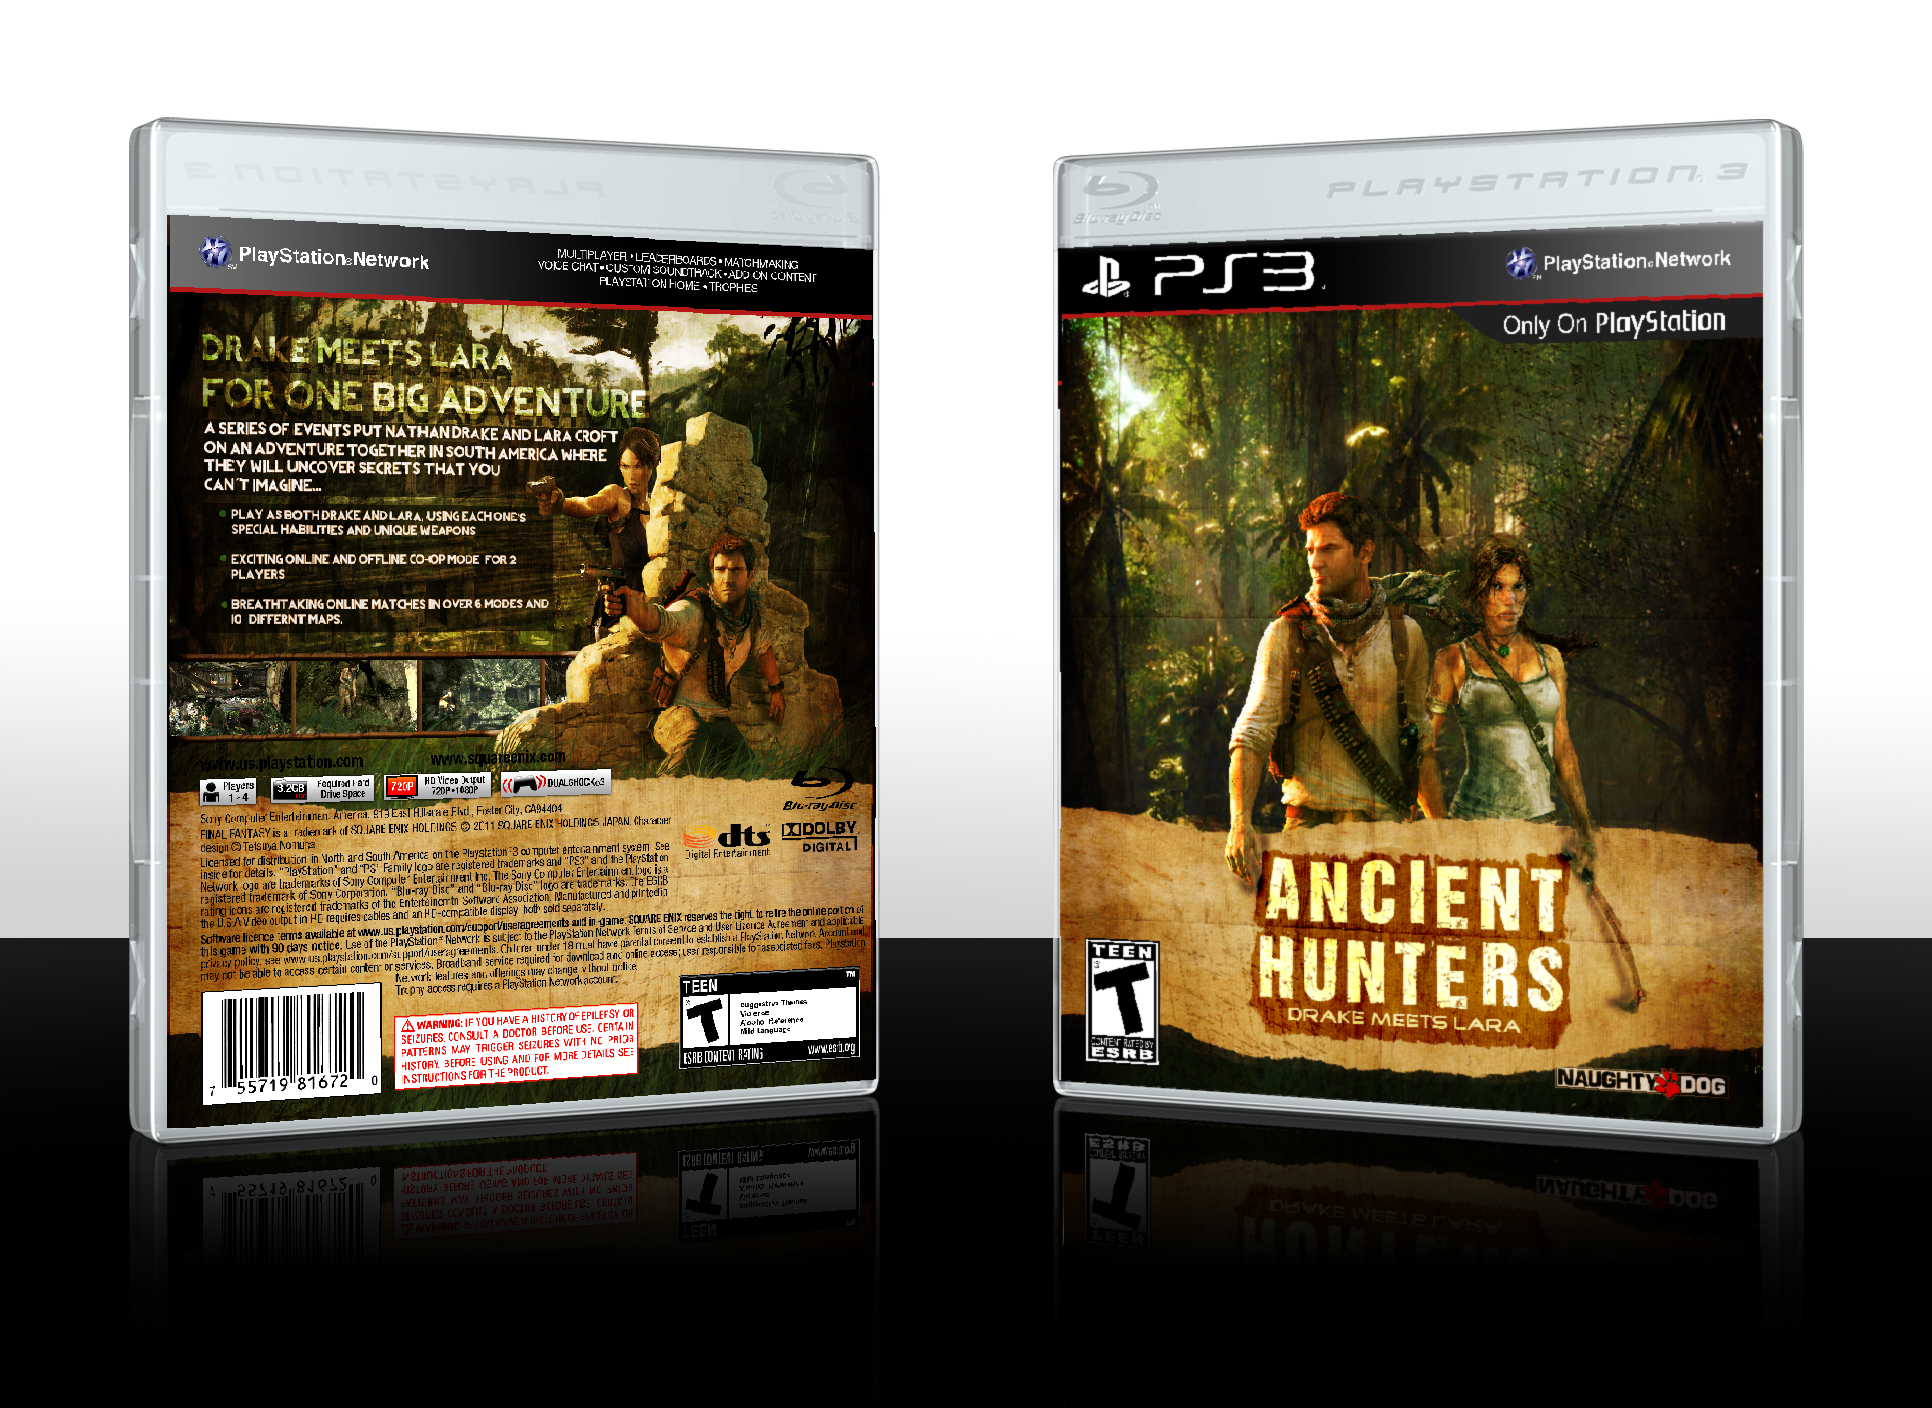 Ancient Hunters: Drake meets Lara box cover